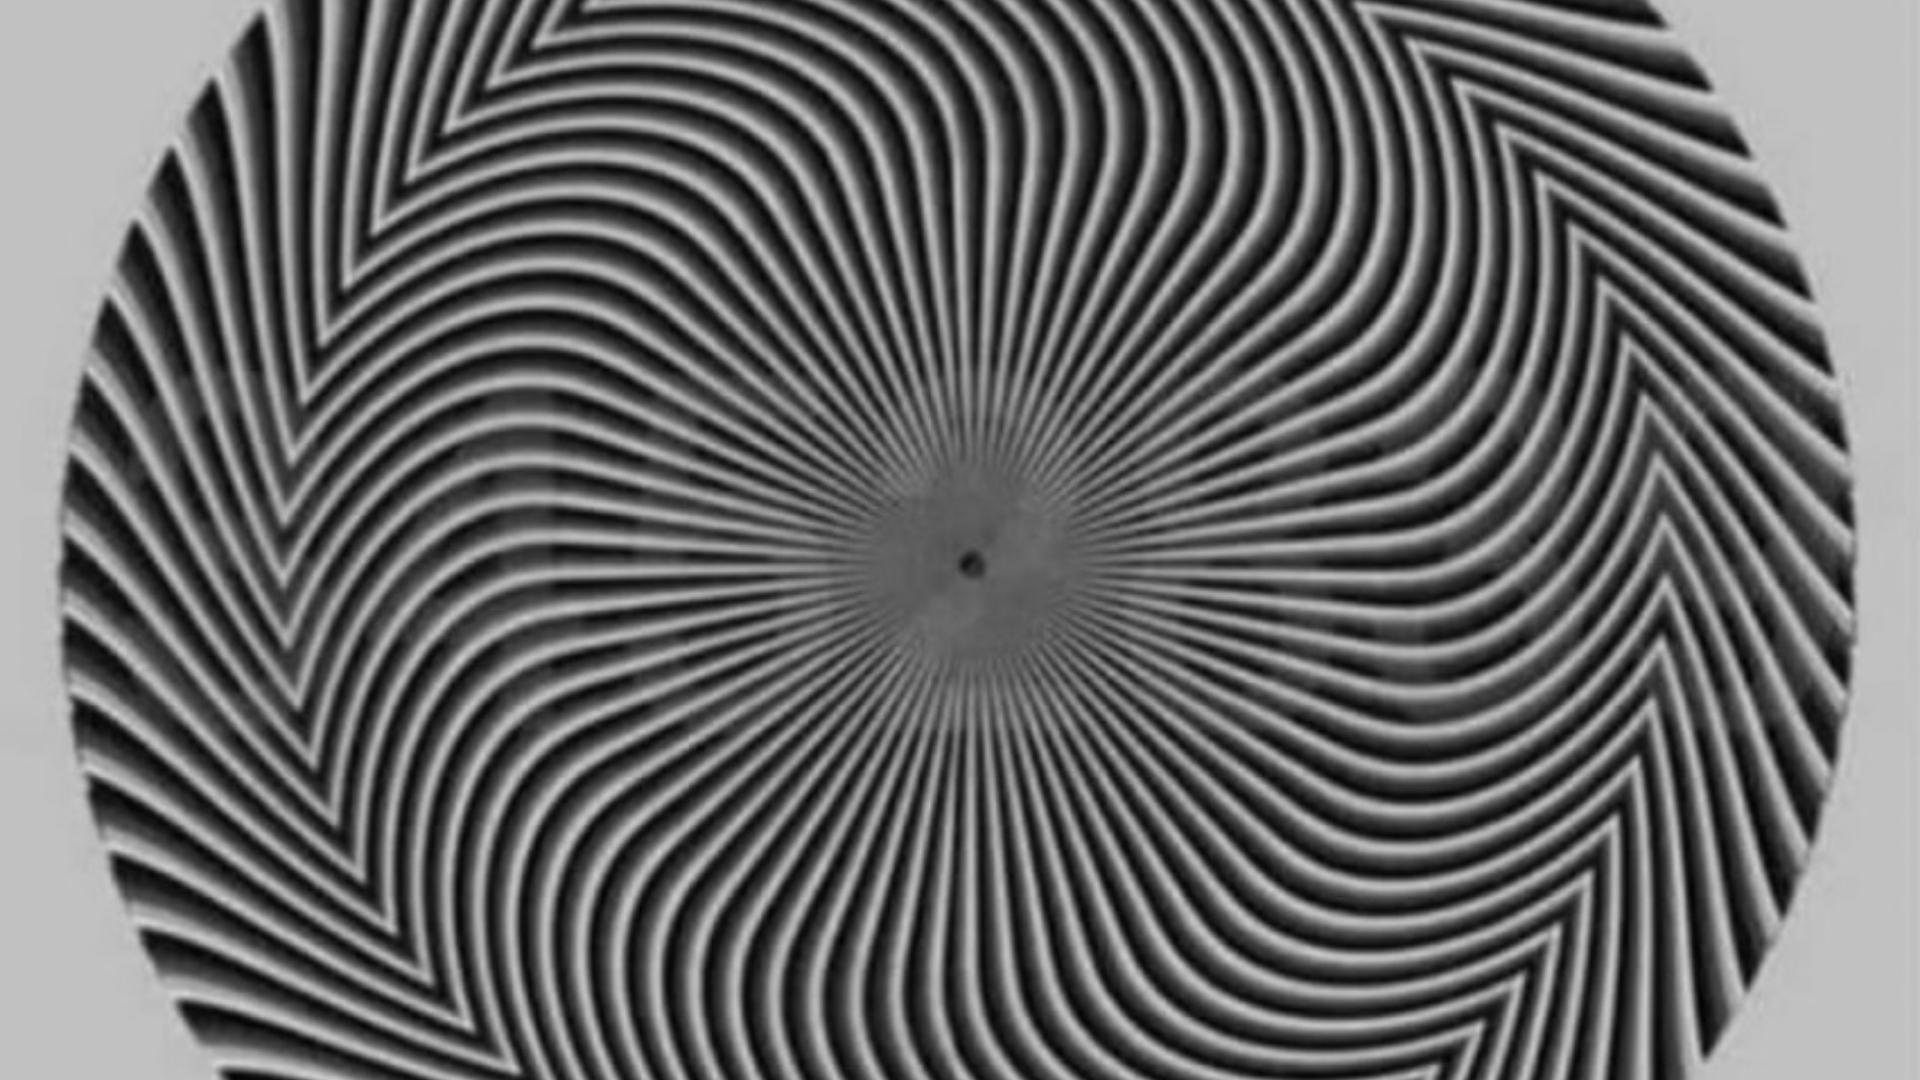 Ce număr vezi? O iluzie optică îi face pe oameni să vadă numere diferite. Testul care oferă indicii despre sănătatea ochilor